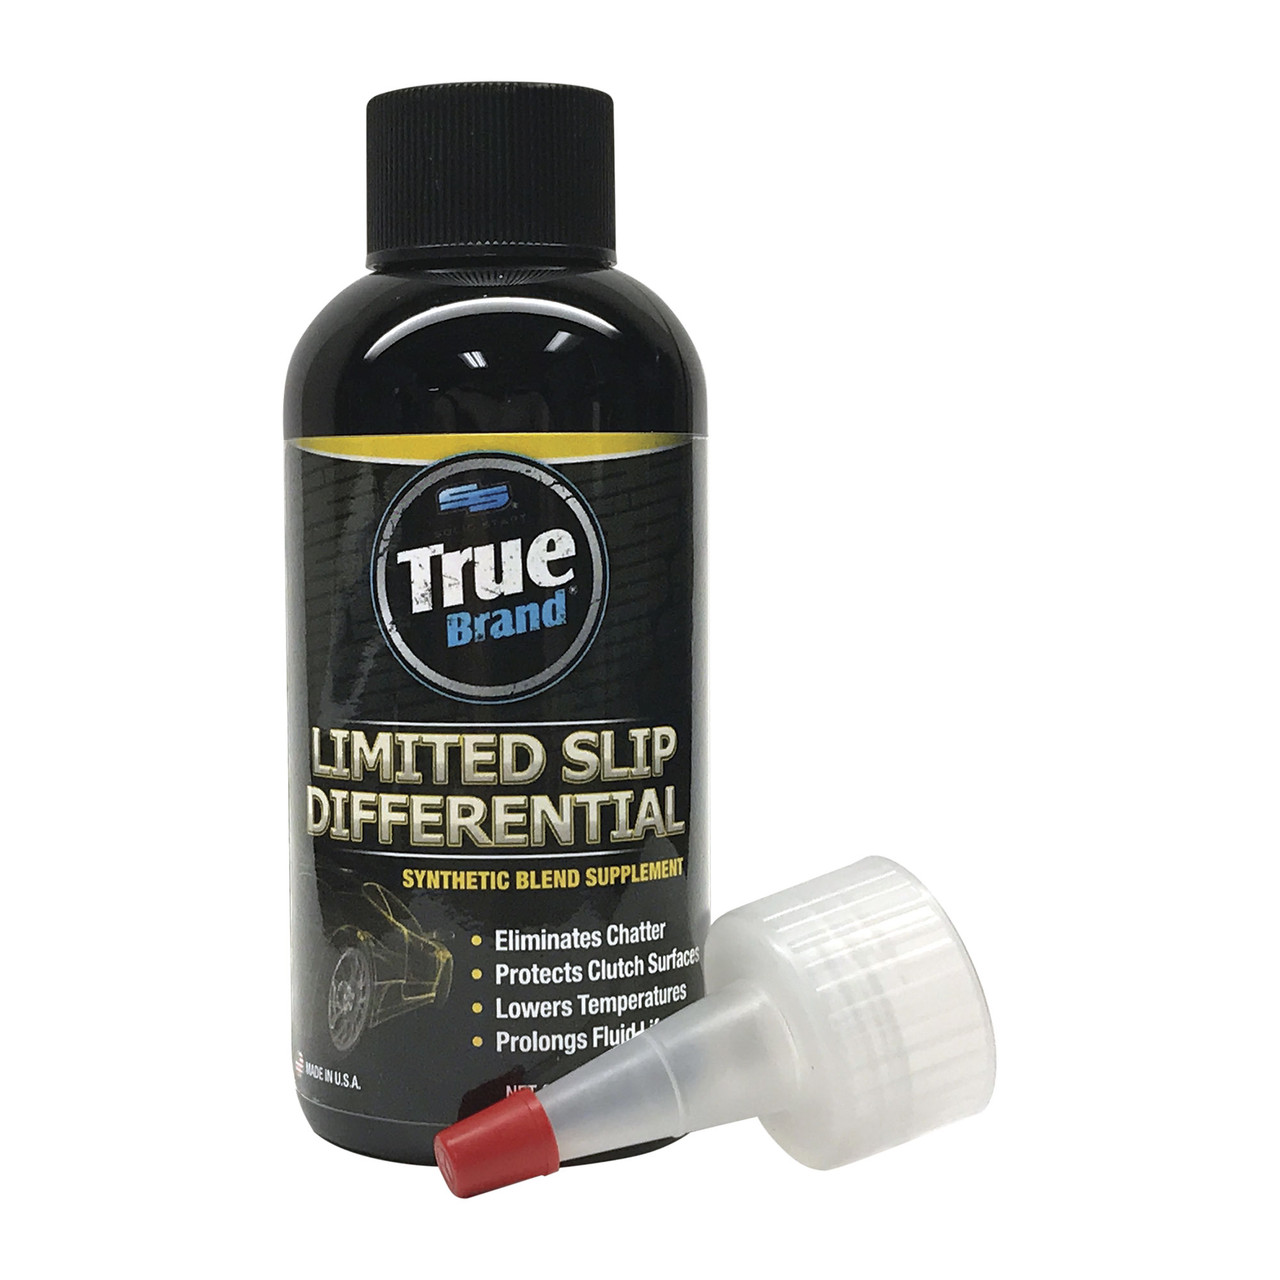 True Brand Limited Slip Differential Supplement - 4.5 oz Bottles